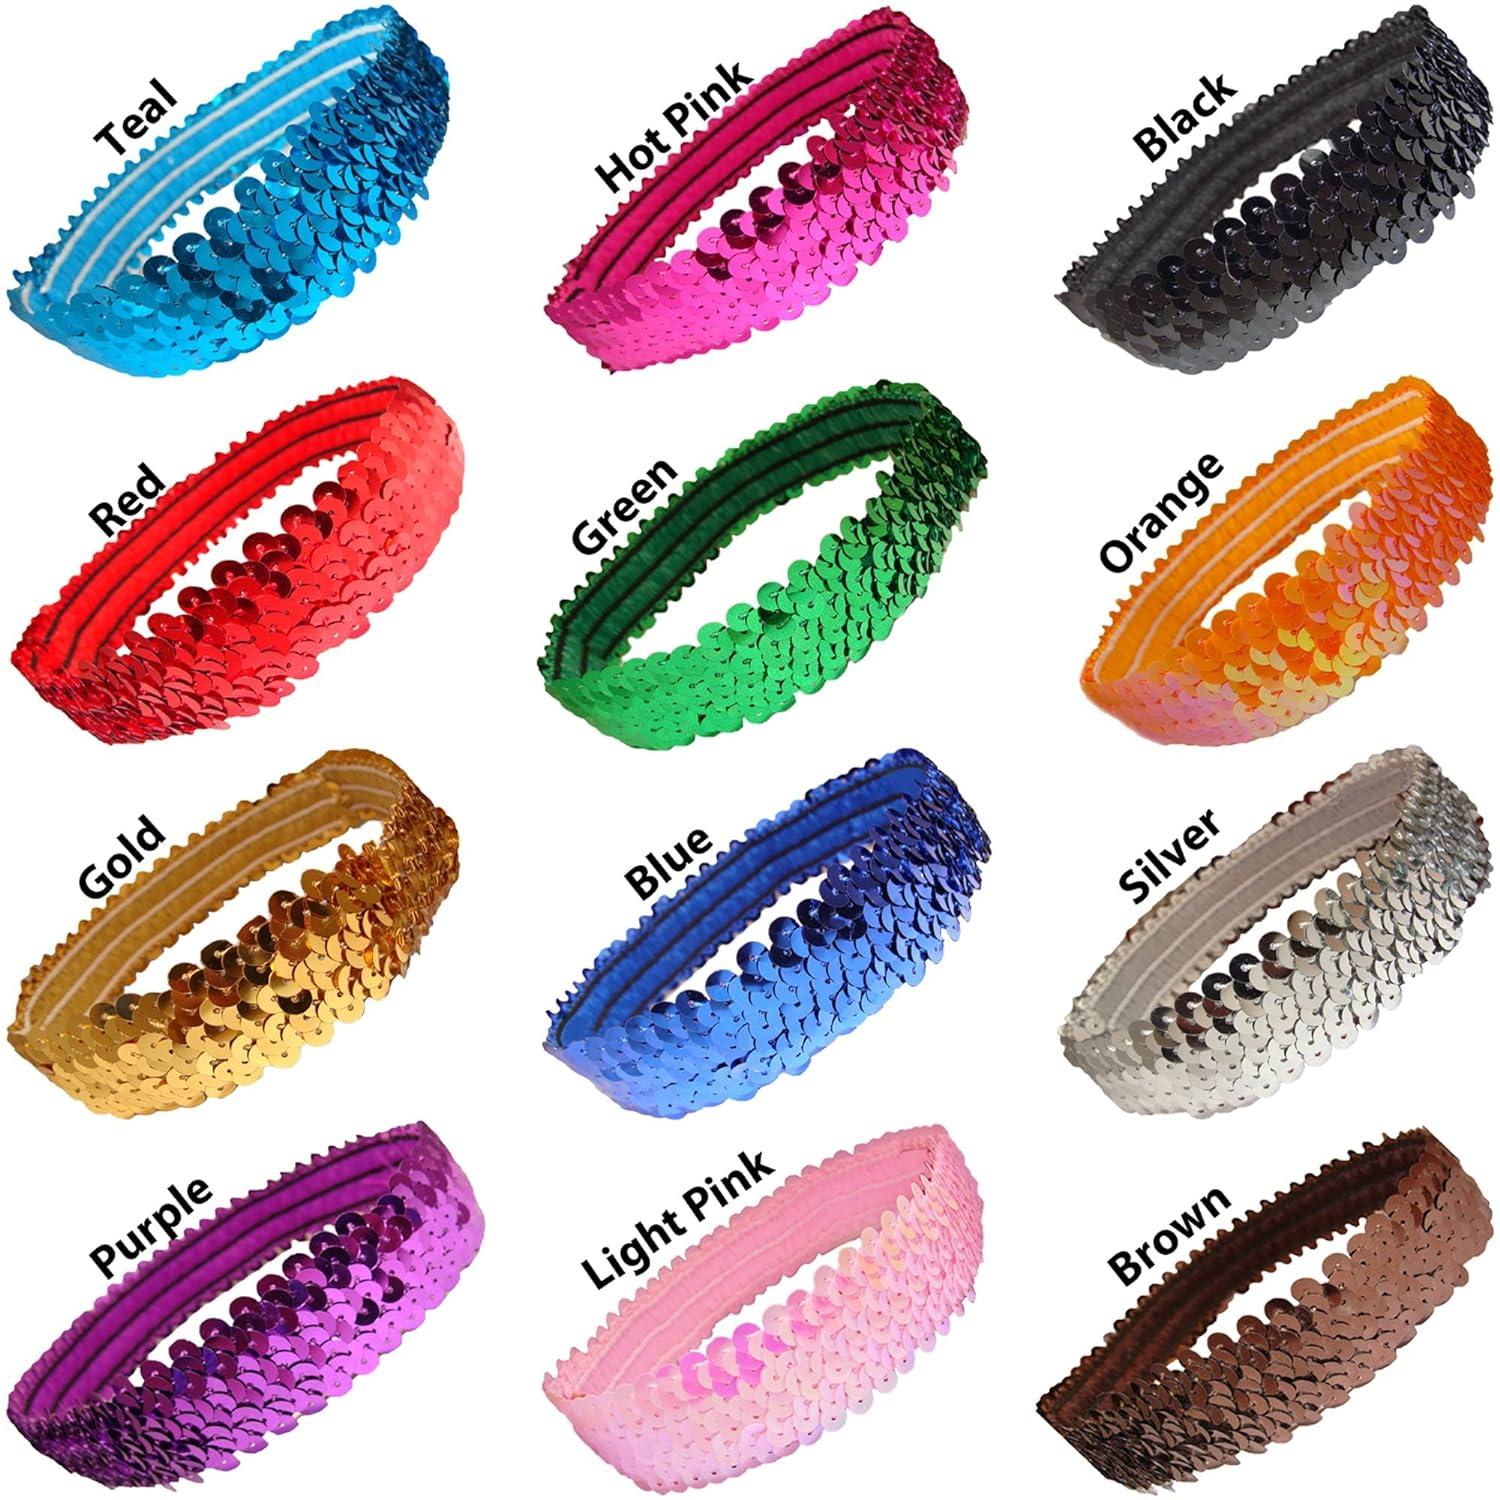 Shaker Glitter Headbands - 4 Pack